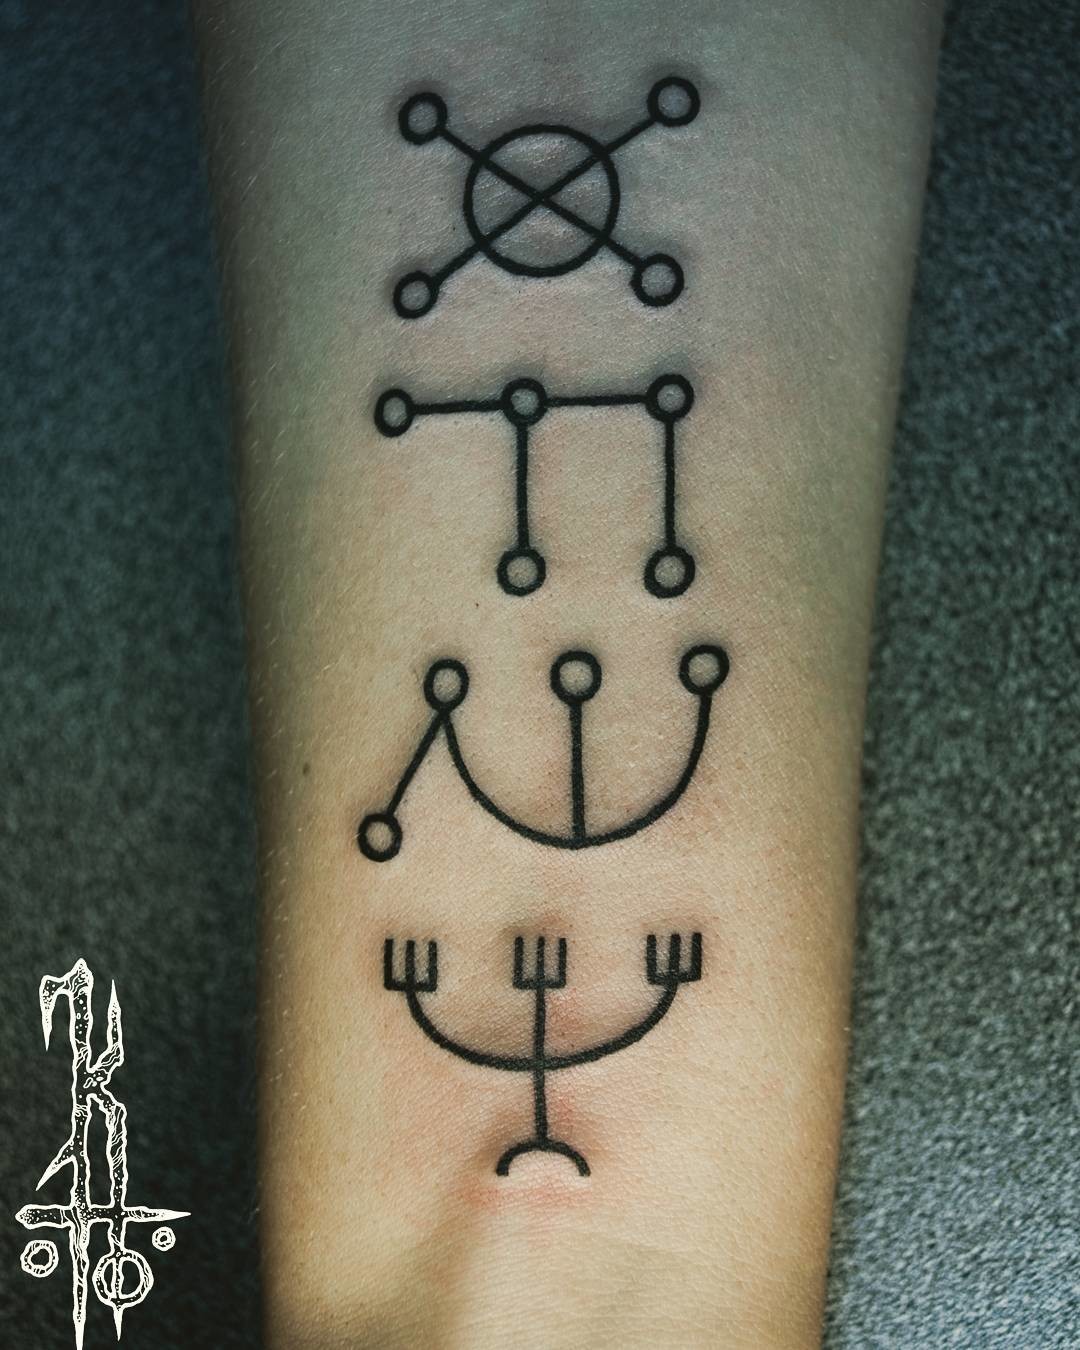 Фотография татуировки под названием «Символы»